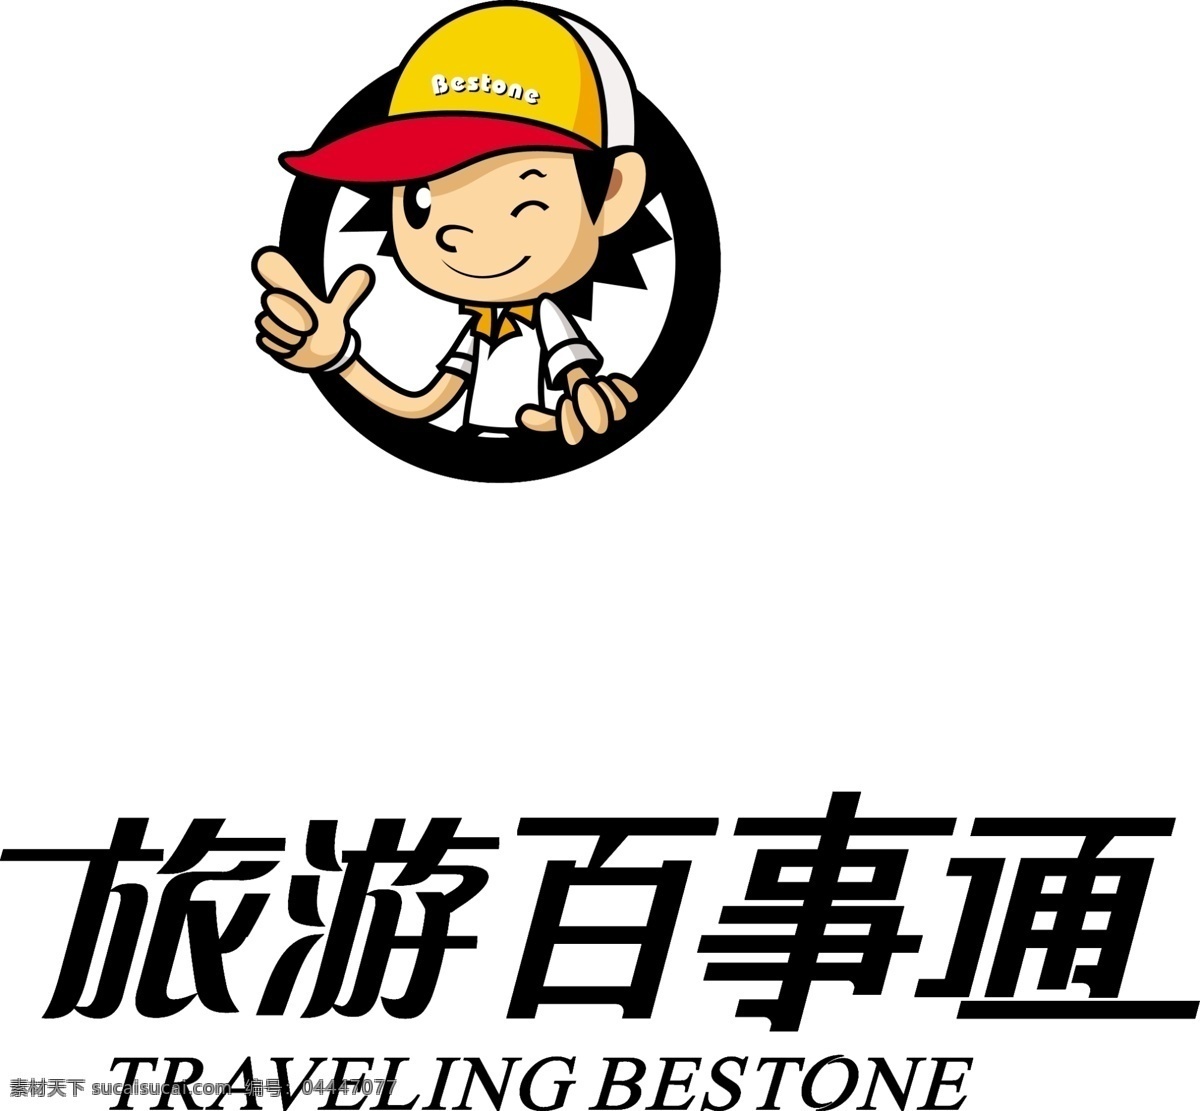 旅游 百事通 logo 旅游百事通 百事通标志 traveling bestone logo设计